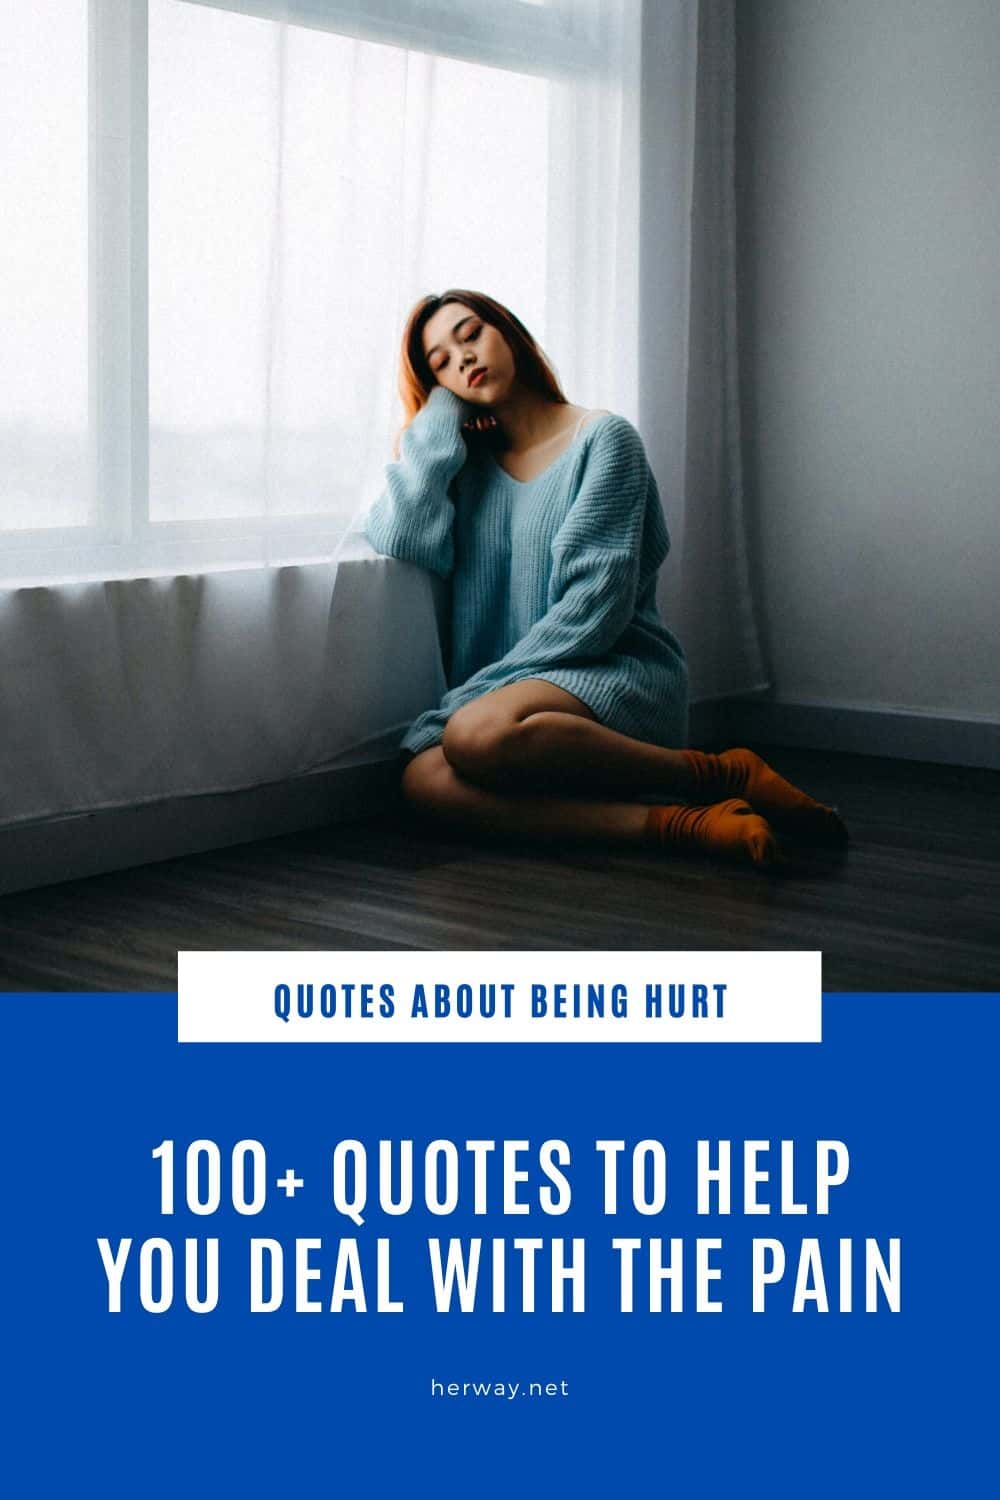 Citazioni su come essere feriti 100+ citazioni per aiutarvi ad affrontare il dolore